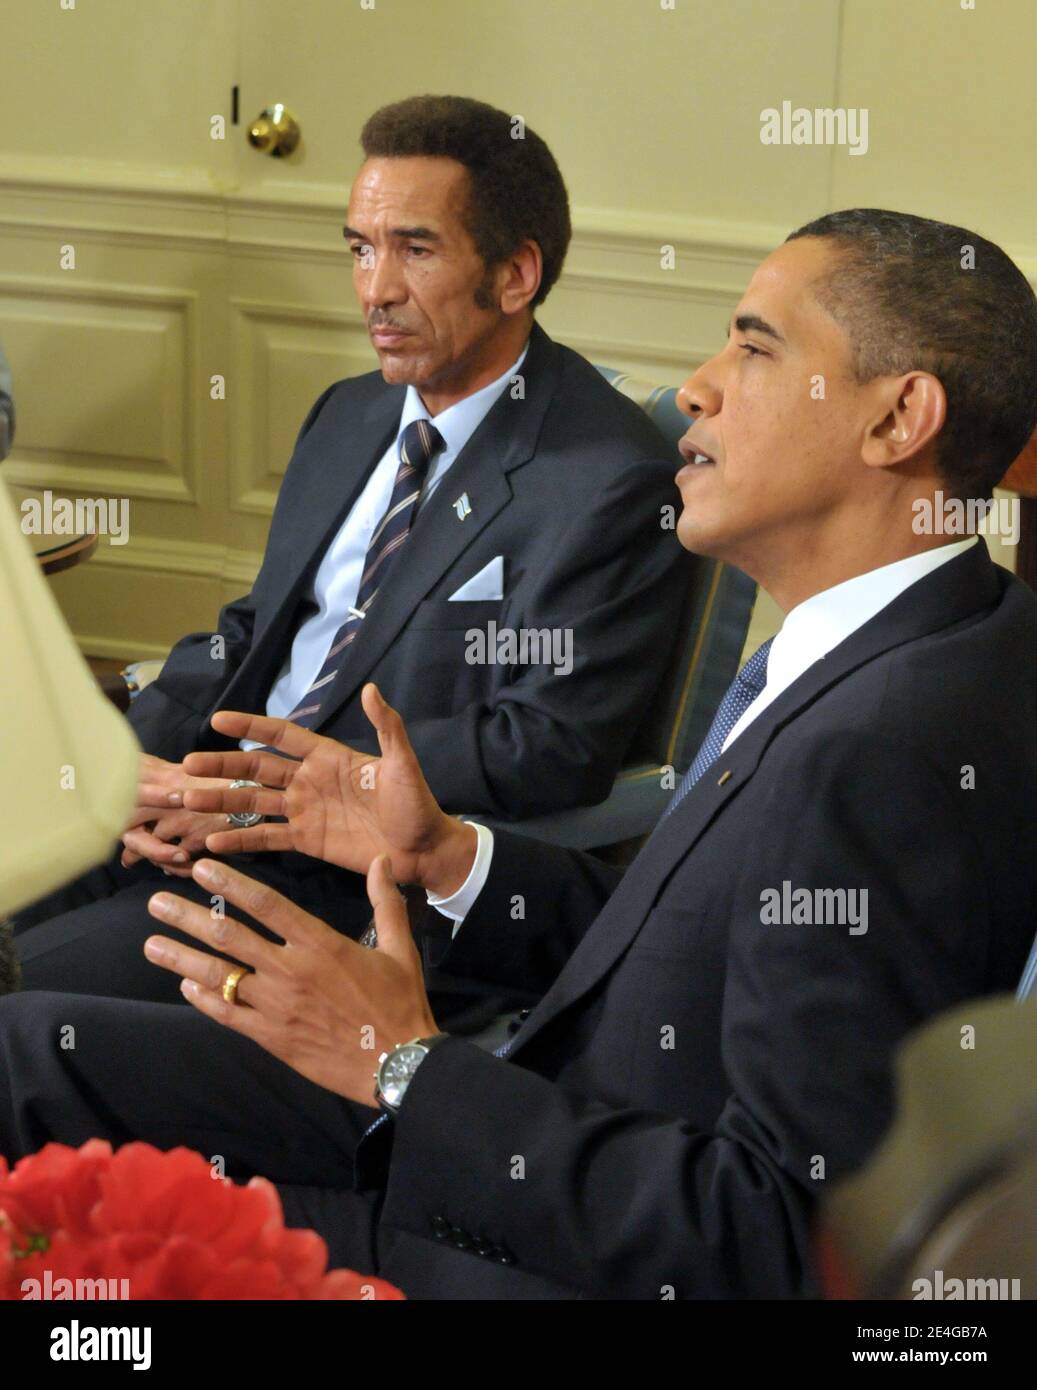 Barack Obama incontra il presidente Ian Khama del Botswana nell'Ufficio ovale della Casa Bianca a Washington, DC il 5 novembre 2009. Foto di Ron Sachs/ABACAPRESS.COM (nella foto : Barack Obama, Ian Khama) Foto Stock